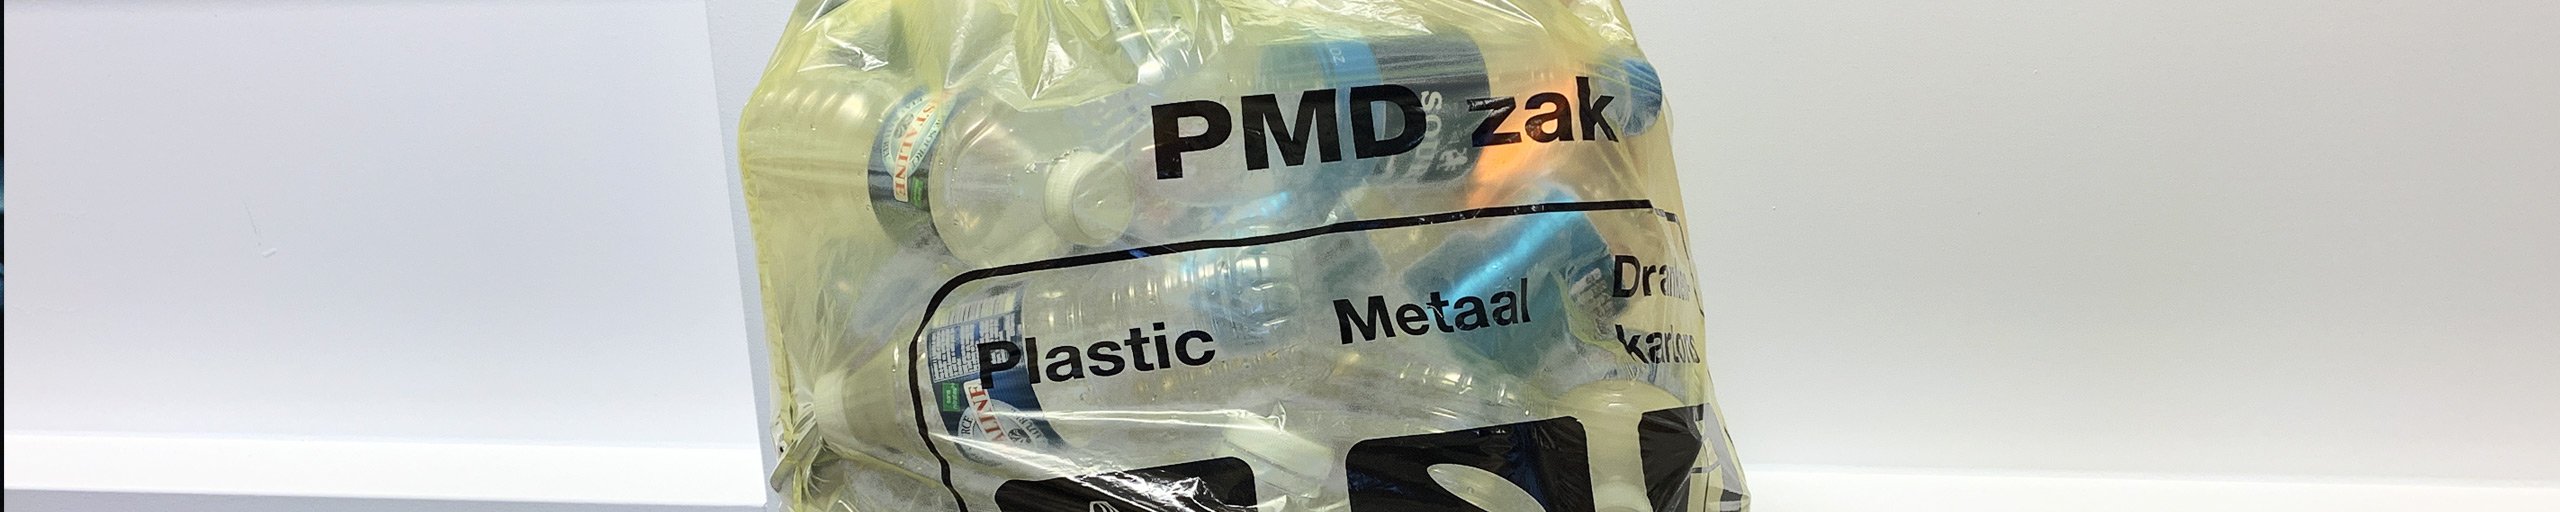 Plastic afval (pmd)